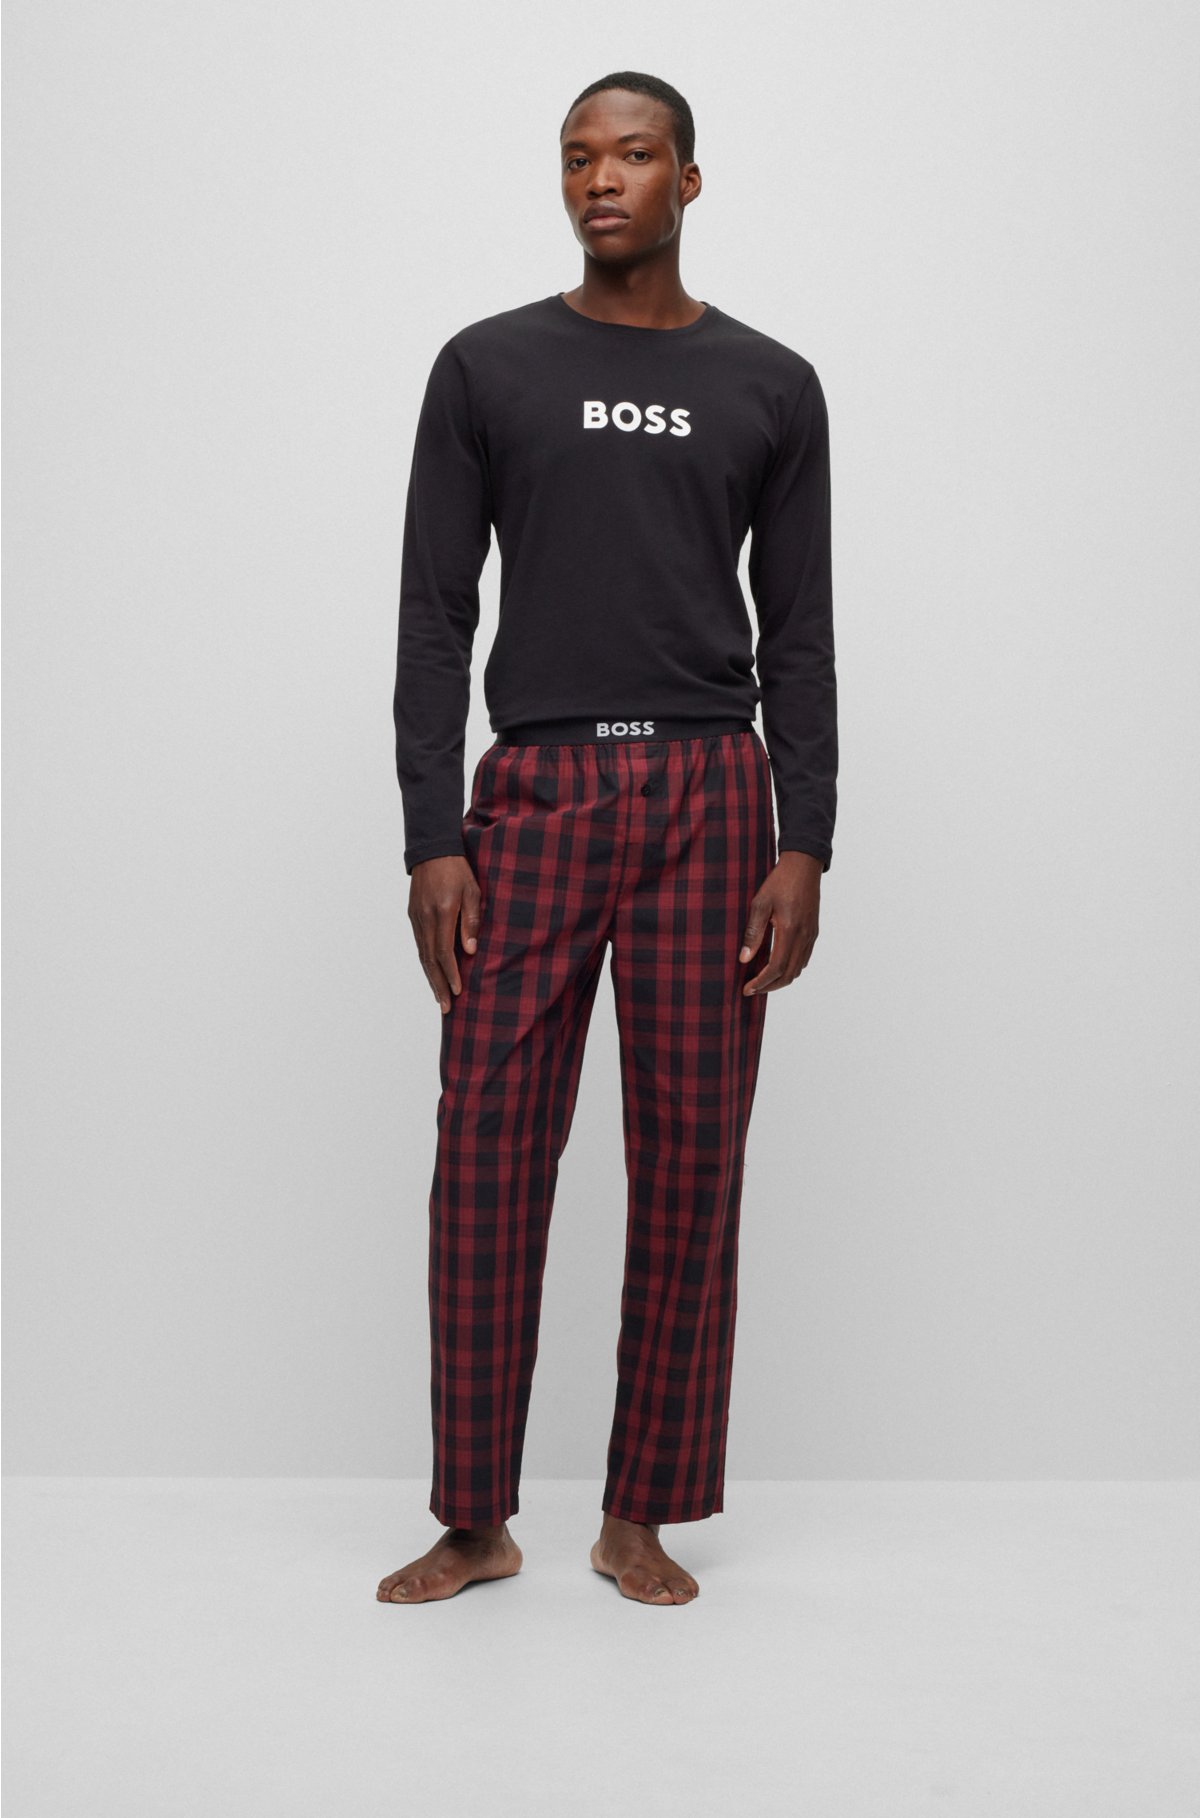 pyjamas with Regular-fit BOSS logos - contrast